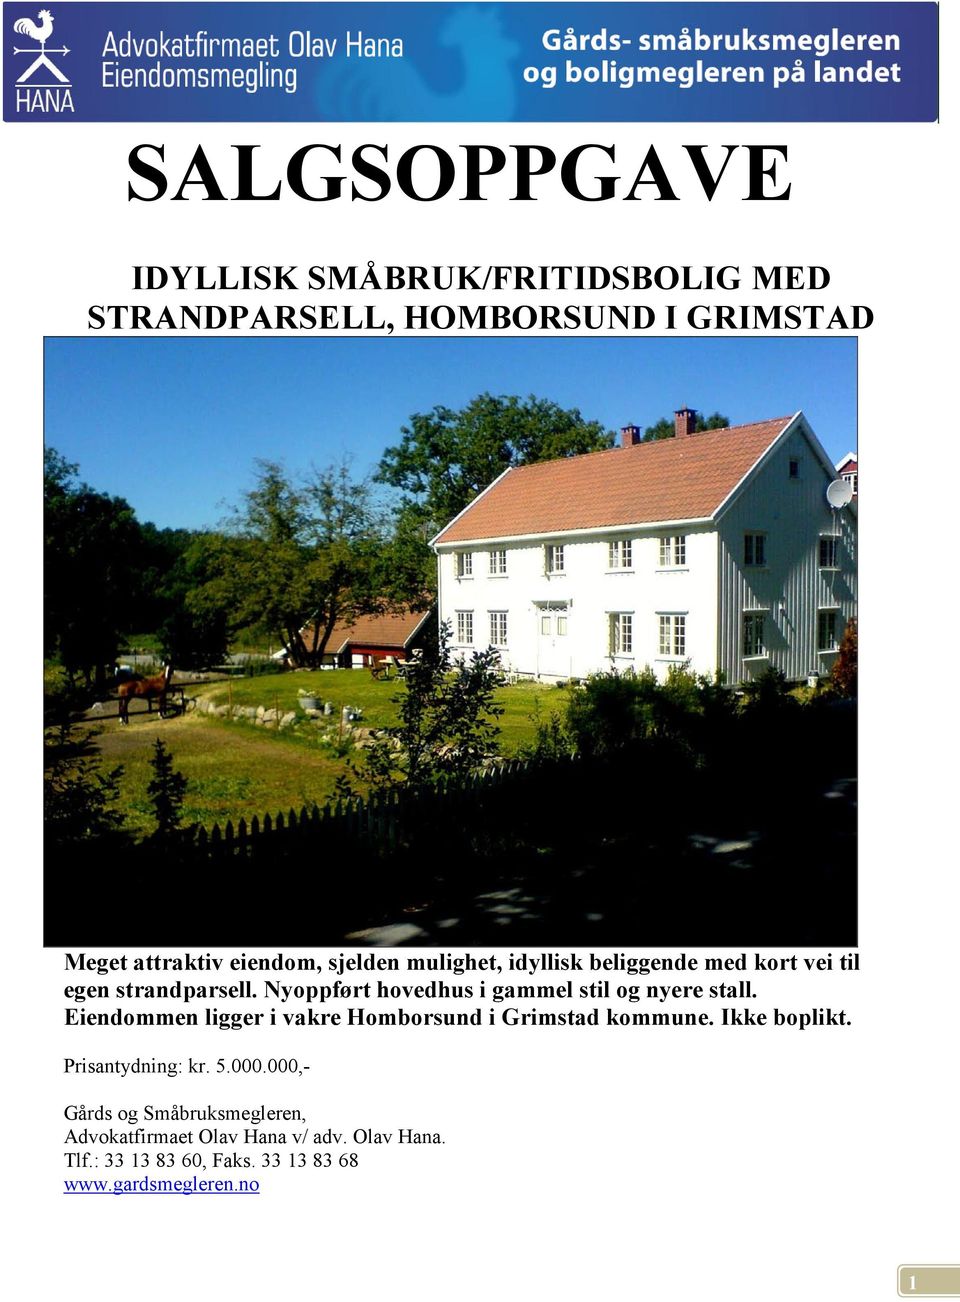 Eiendommen ligger i vakre Homborsund i Grimstad kommune. Ikke boplikt. Prisantydning: kr. 5.000.